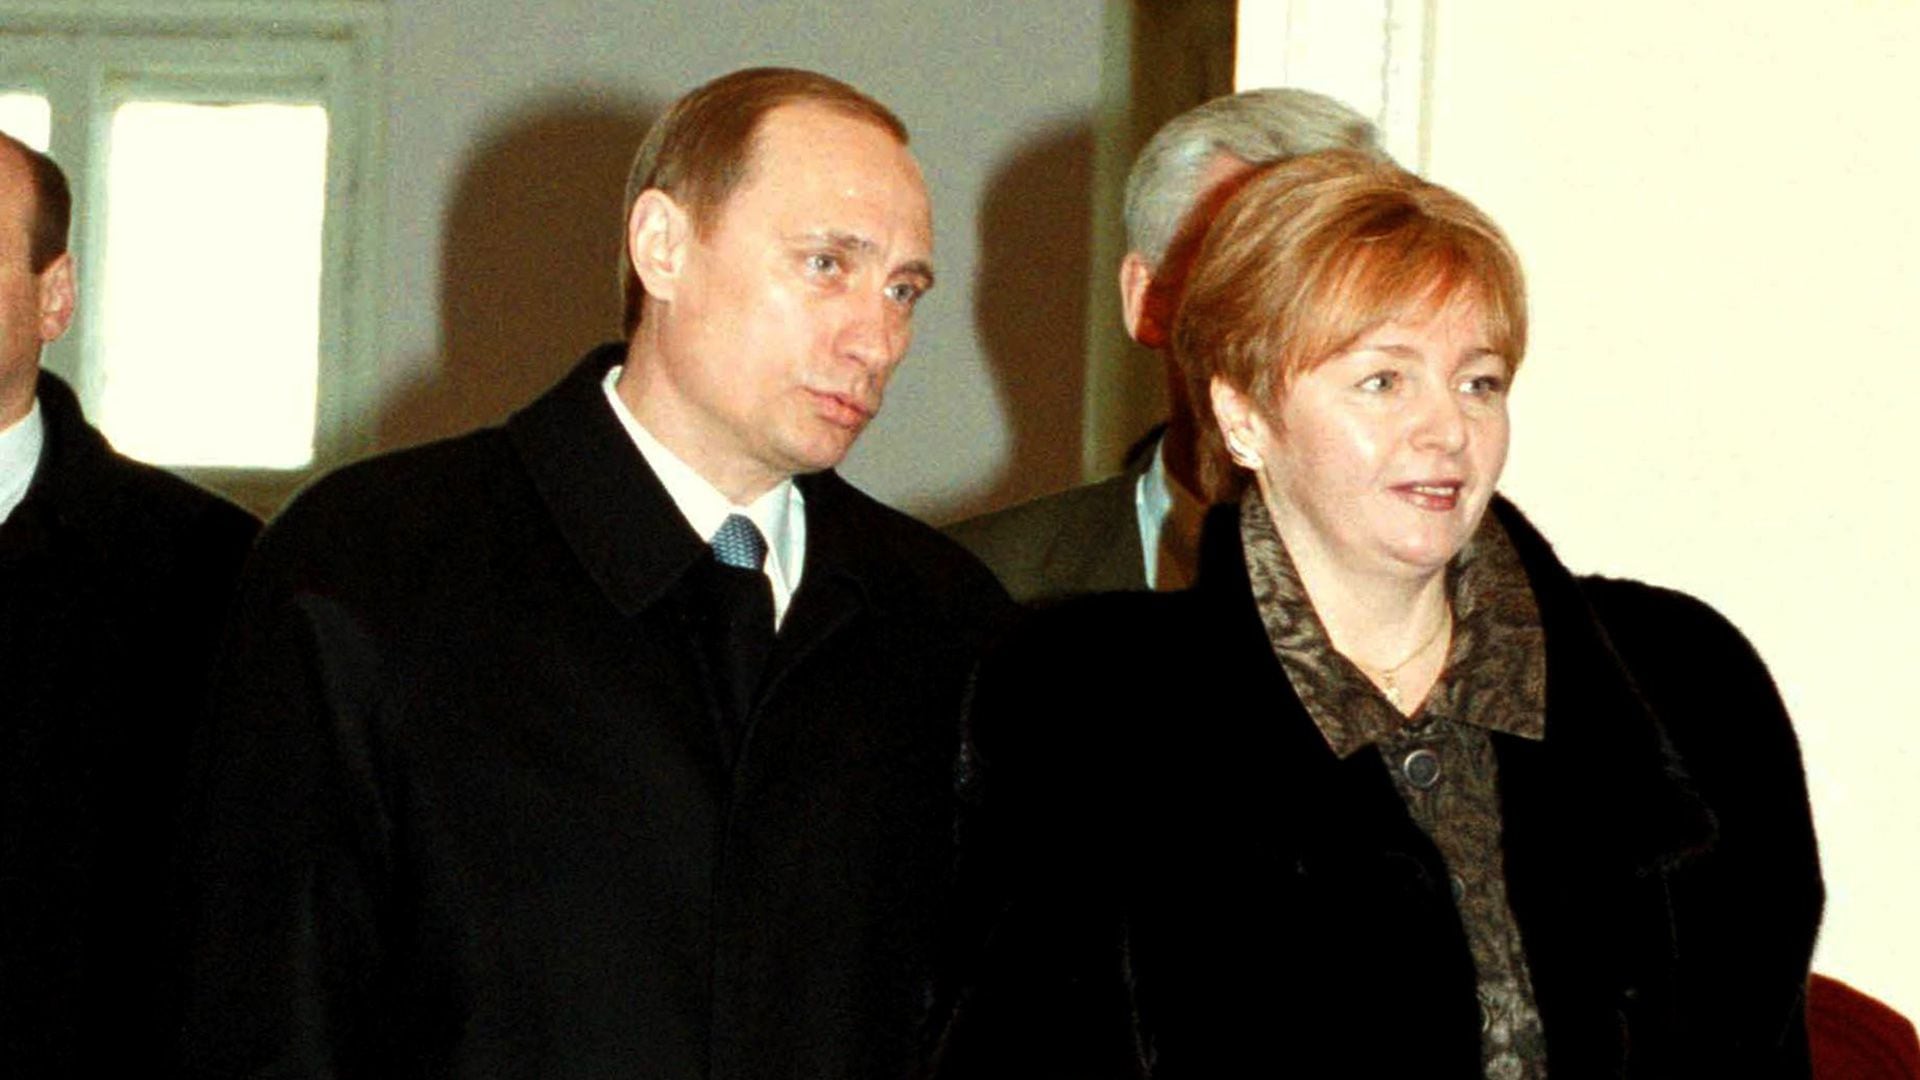 El 6 de junio de 2013, Putin y Liudmila anunciaron que el matrimonio se había terminado y que habían iniciado los trámites de divorcio que, según informó el Kremlin, firmaron en abril de 2014 (Photo by Laski Diffusion)